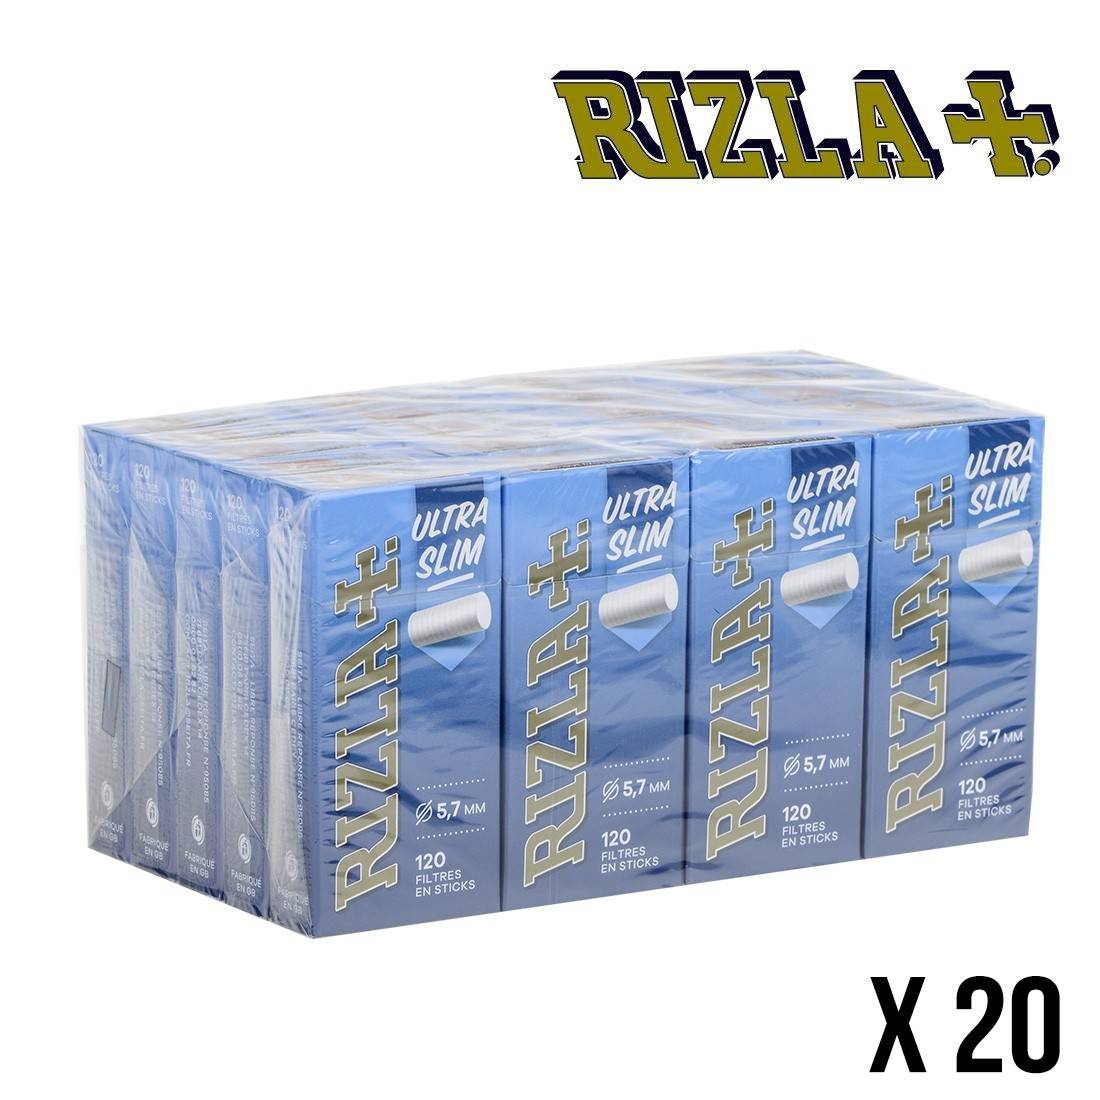 Filtres Rizla + ultra slim  Vos filtres cigarettes au meilleur prix